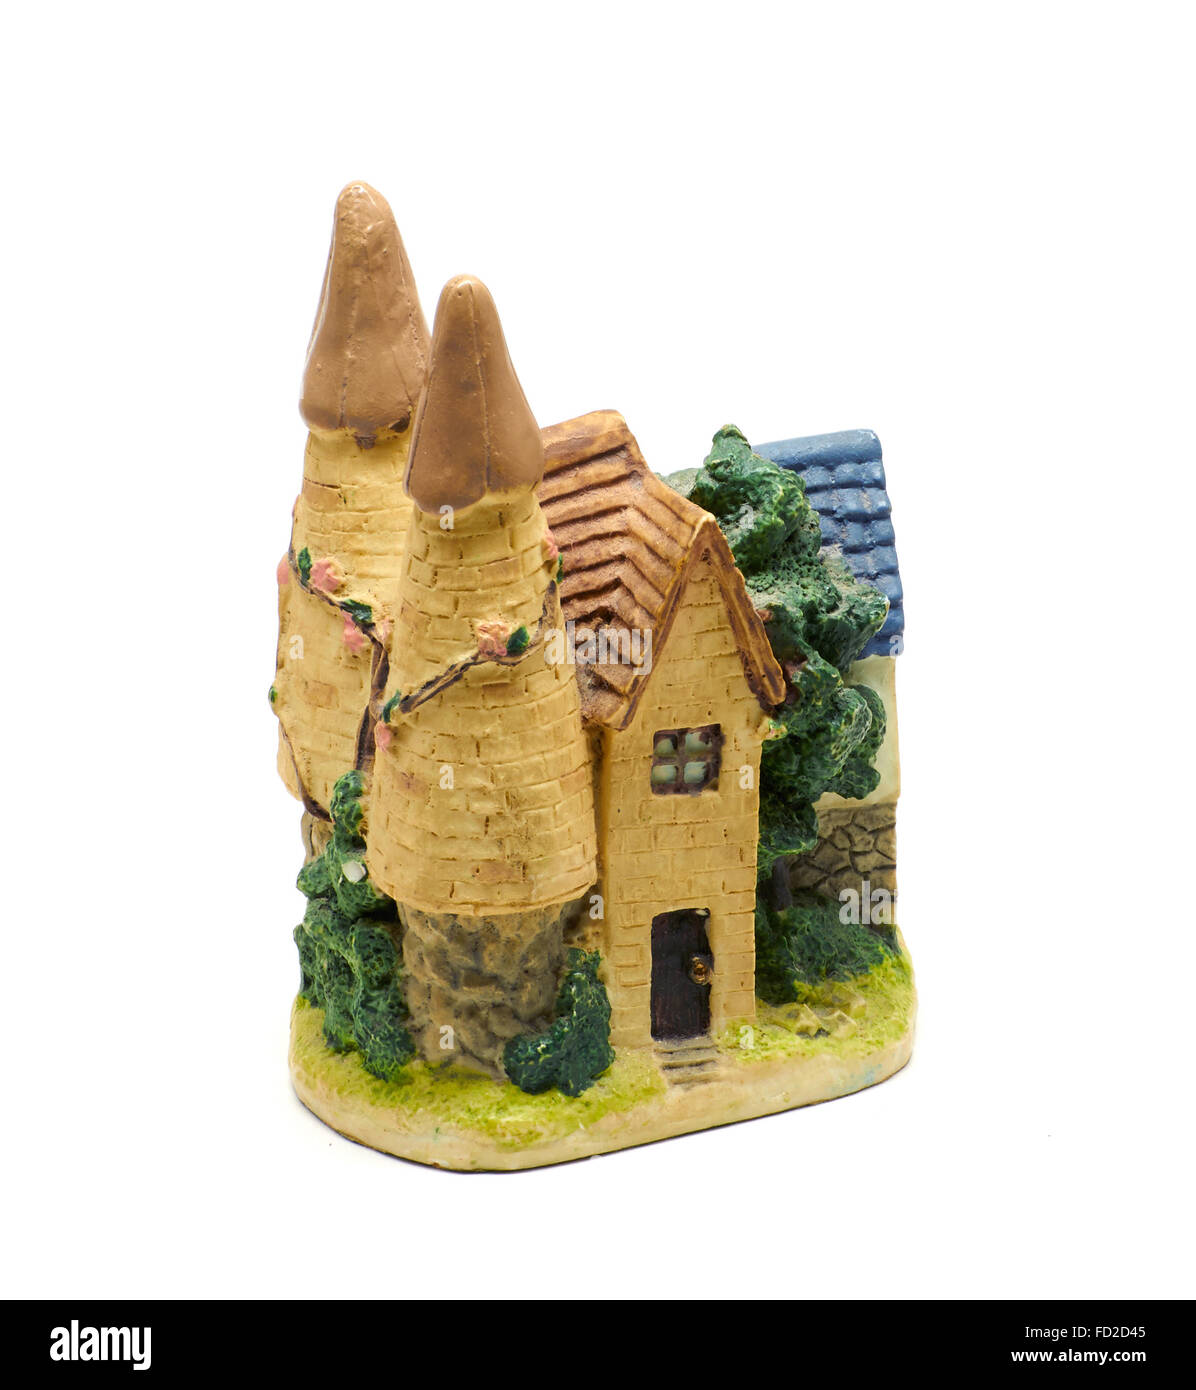 Retour d'argile château miniature avec des arbres verts Banque D'Images